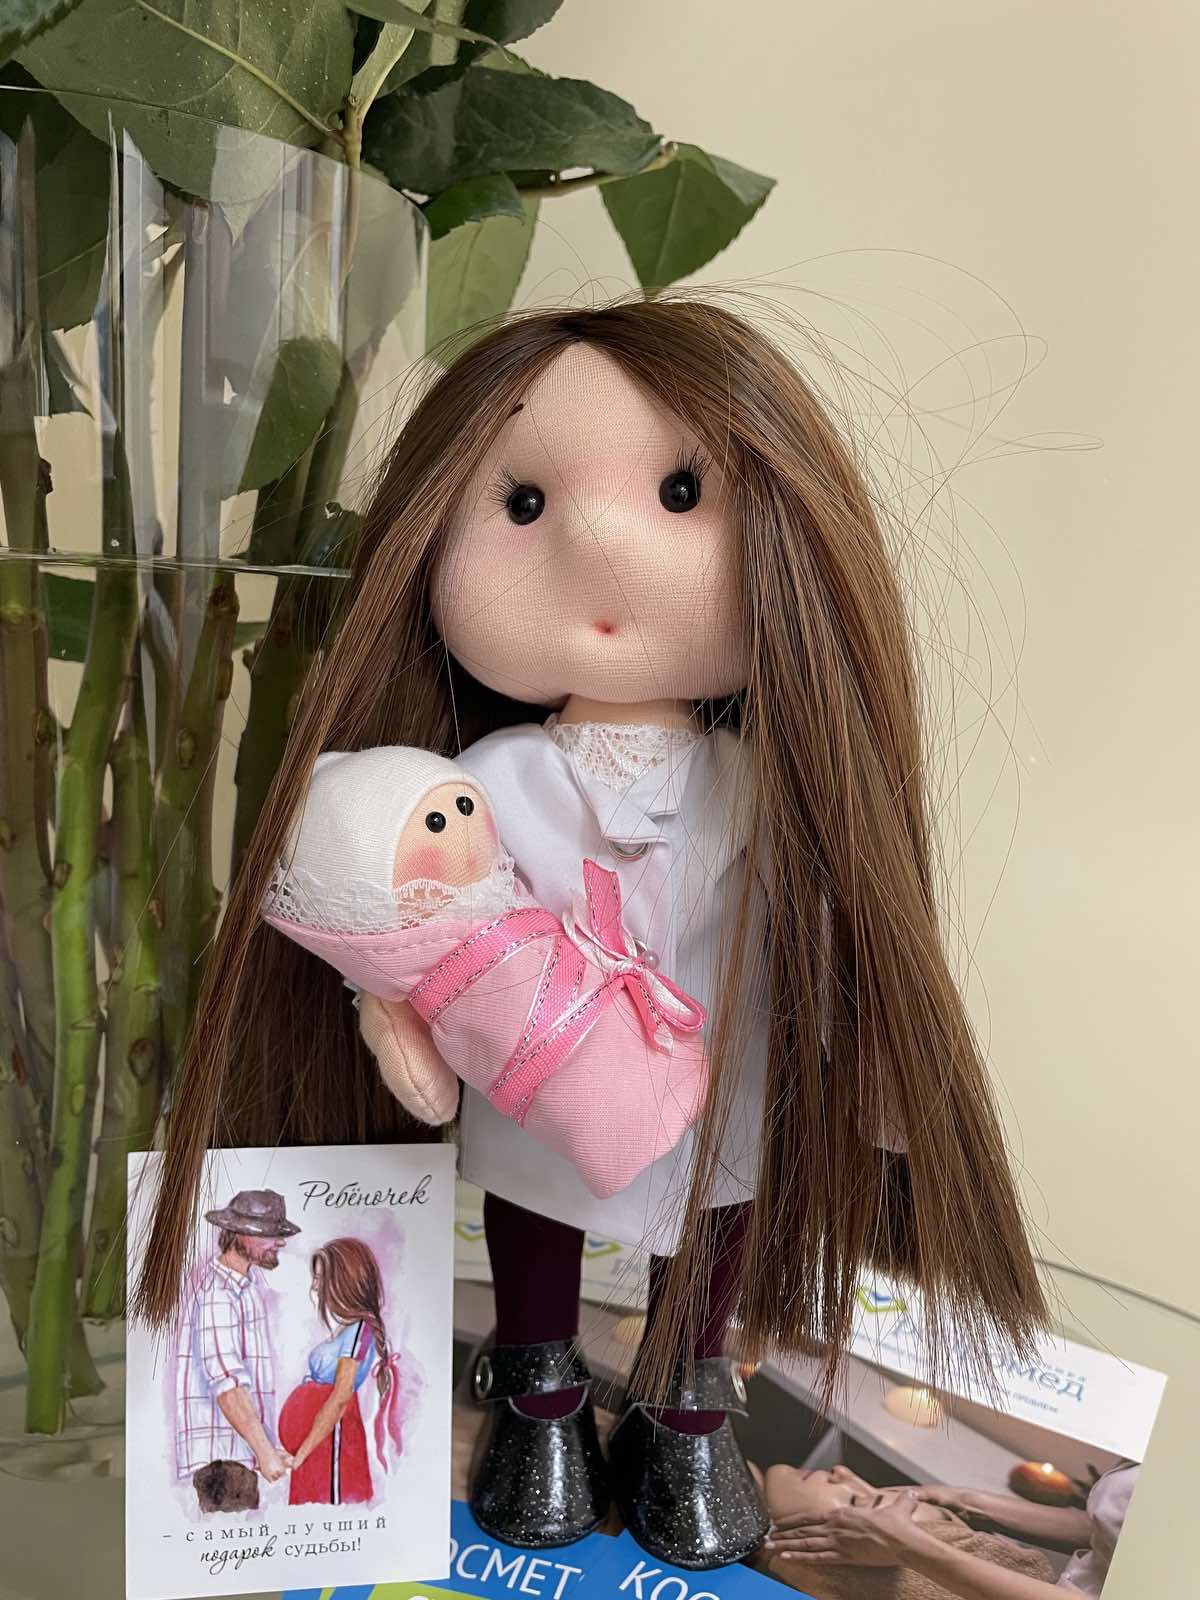 Одна из пациенток, которой удалось стать мамой, в благодарность сделала куклу точь-в-точь как главврач медцентра